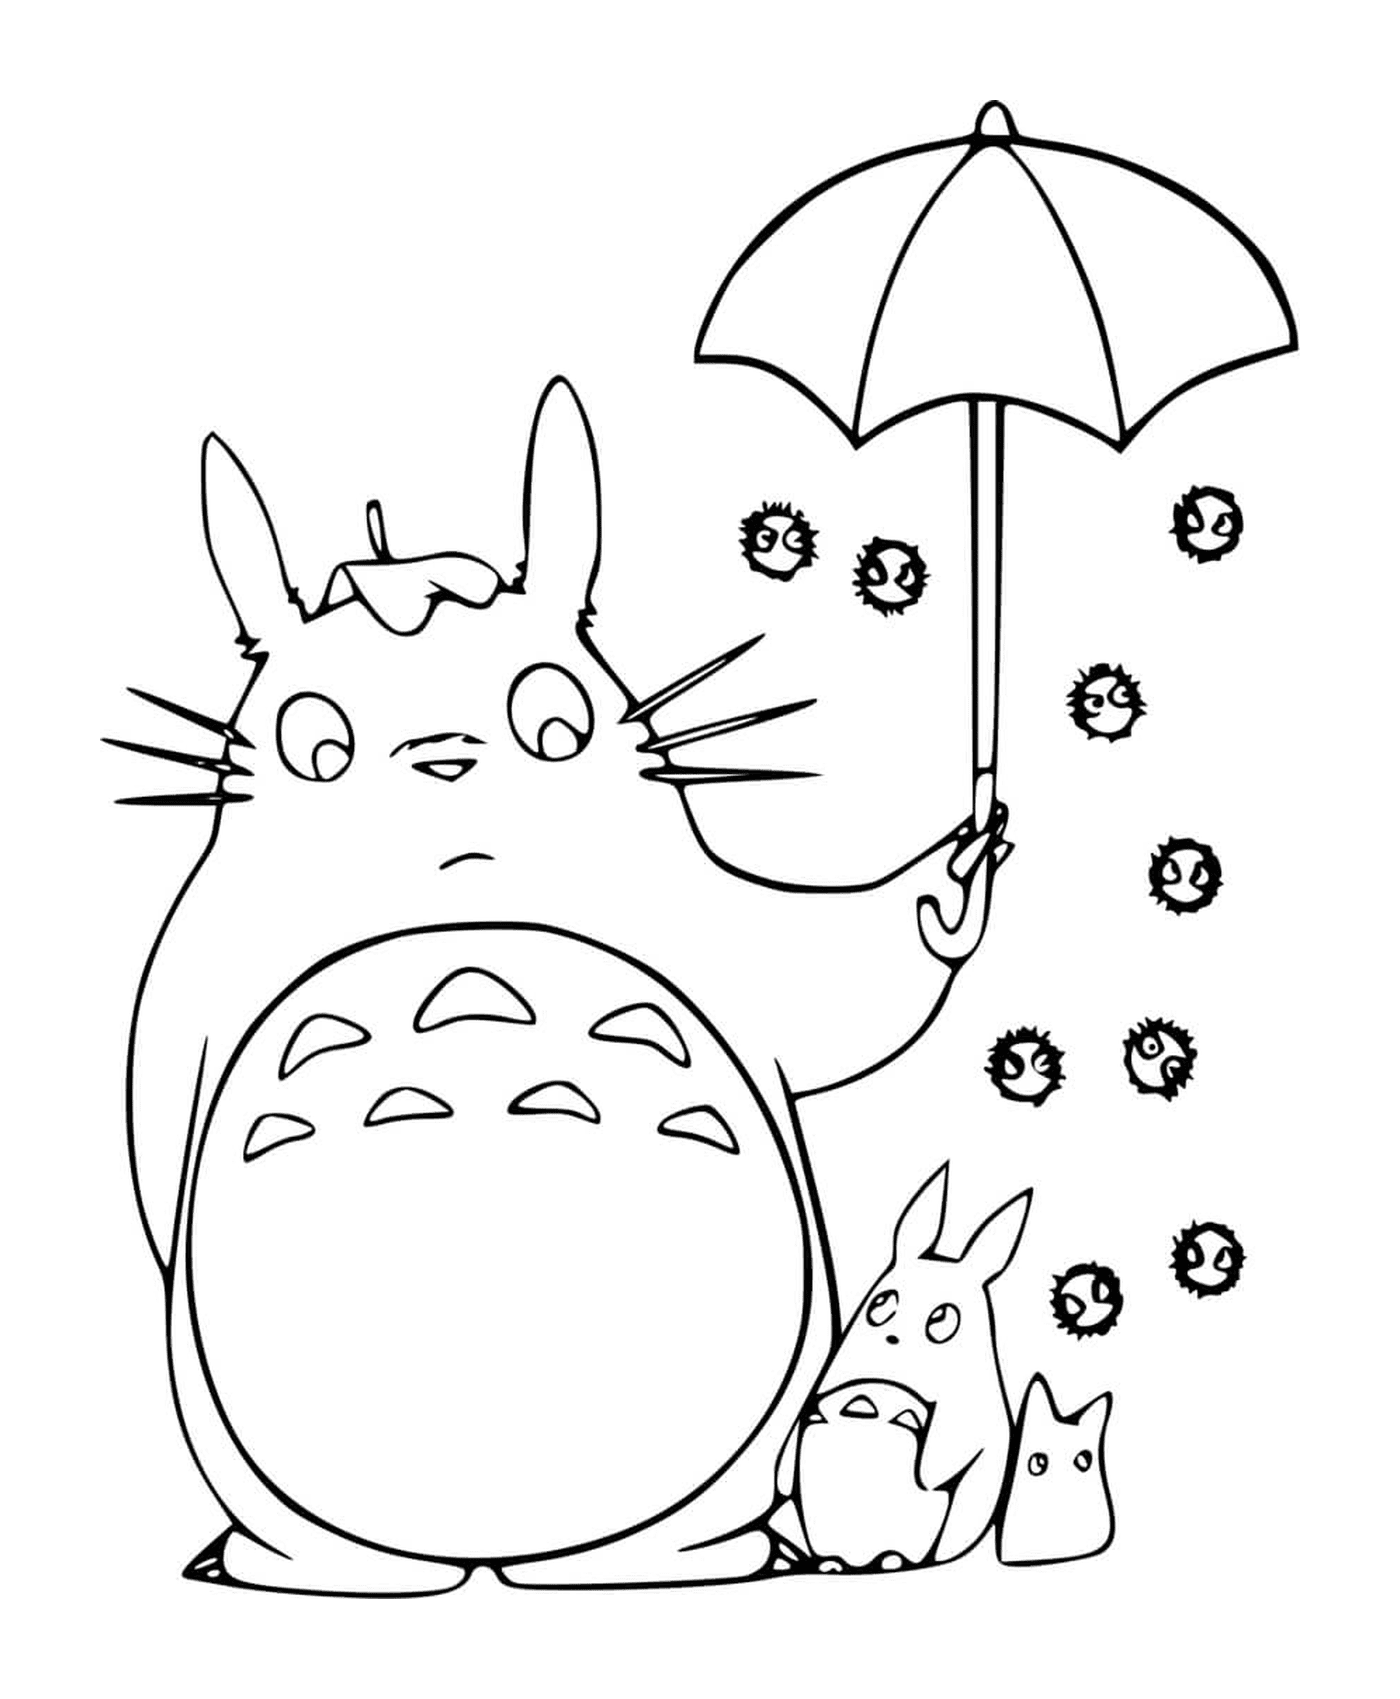  Totoro in possesso di un ombrello aperto con un bambino 